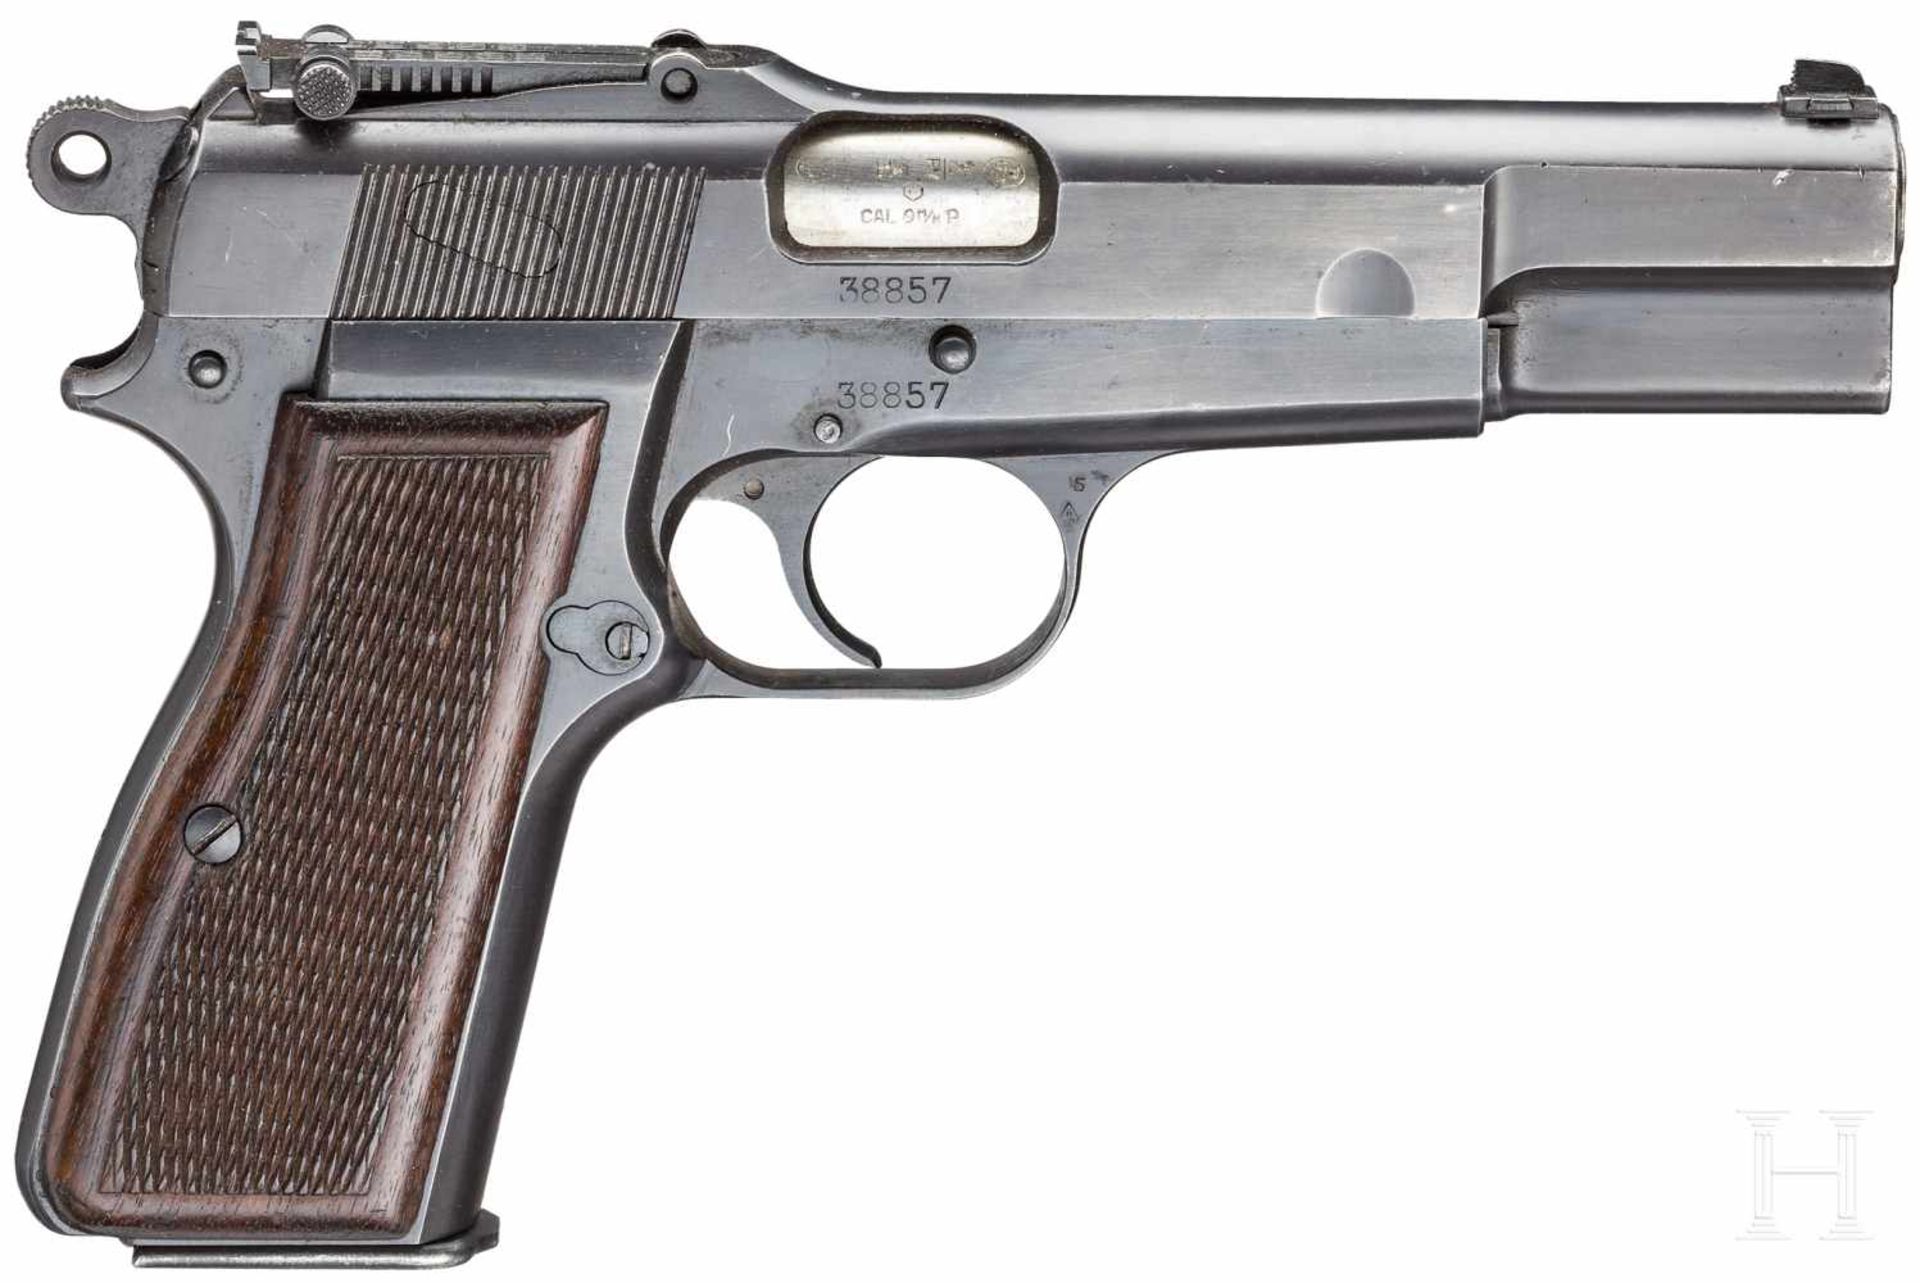 FN GP (Grand Puissance) Mod. 35, mit Tasche und AnschlagbrettKal. 9 mm Luger, Nr. 38857, - Bild 2 aus 3